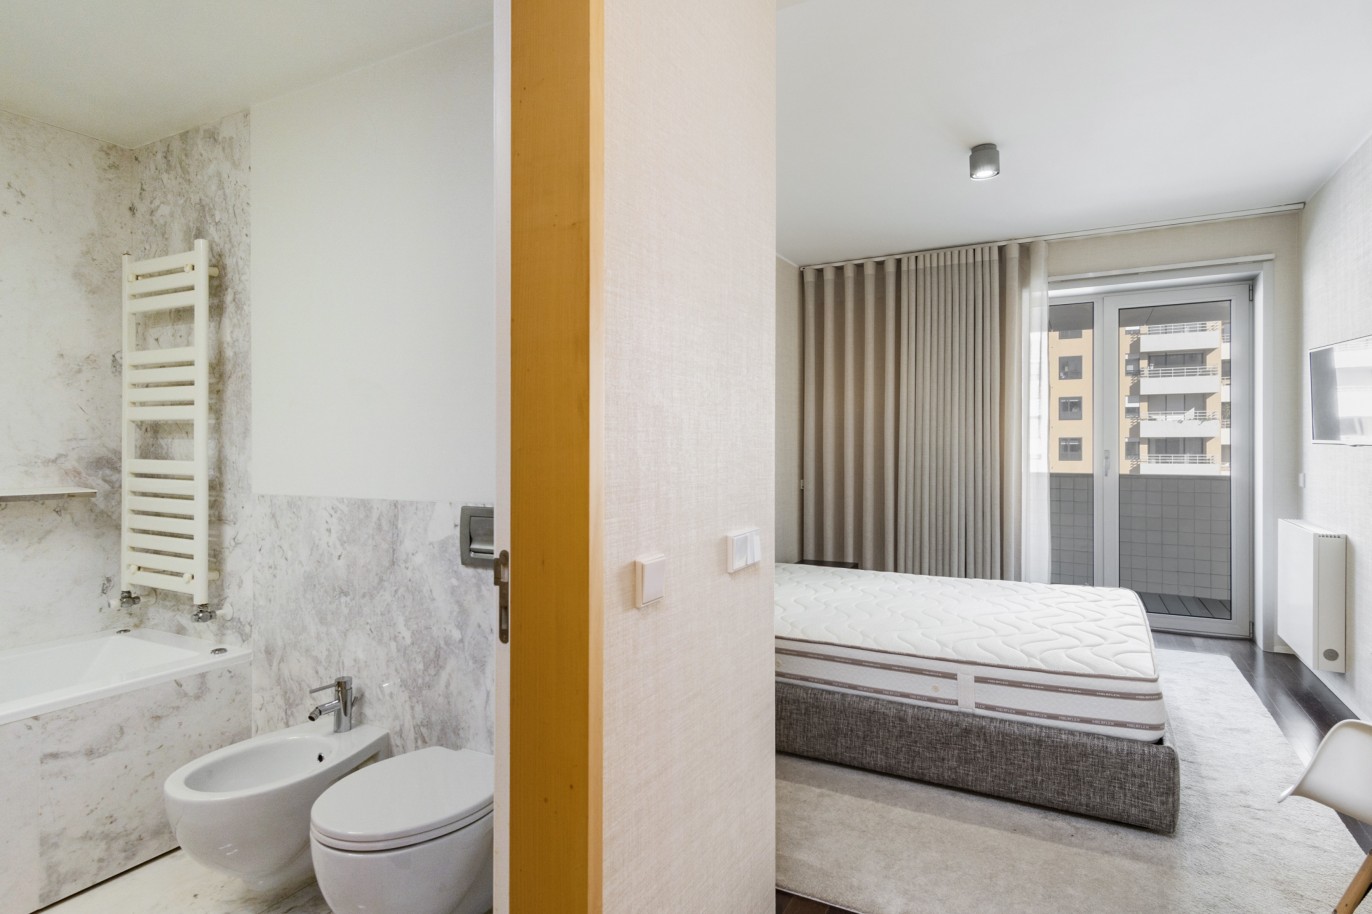 3 Bedroom Duplex Apartment with balcony, for sale, in Boavista, Porto, Portugal_217715